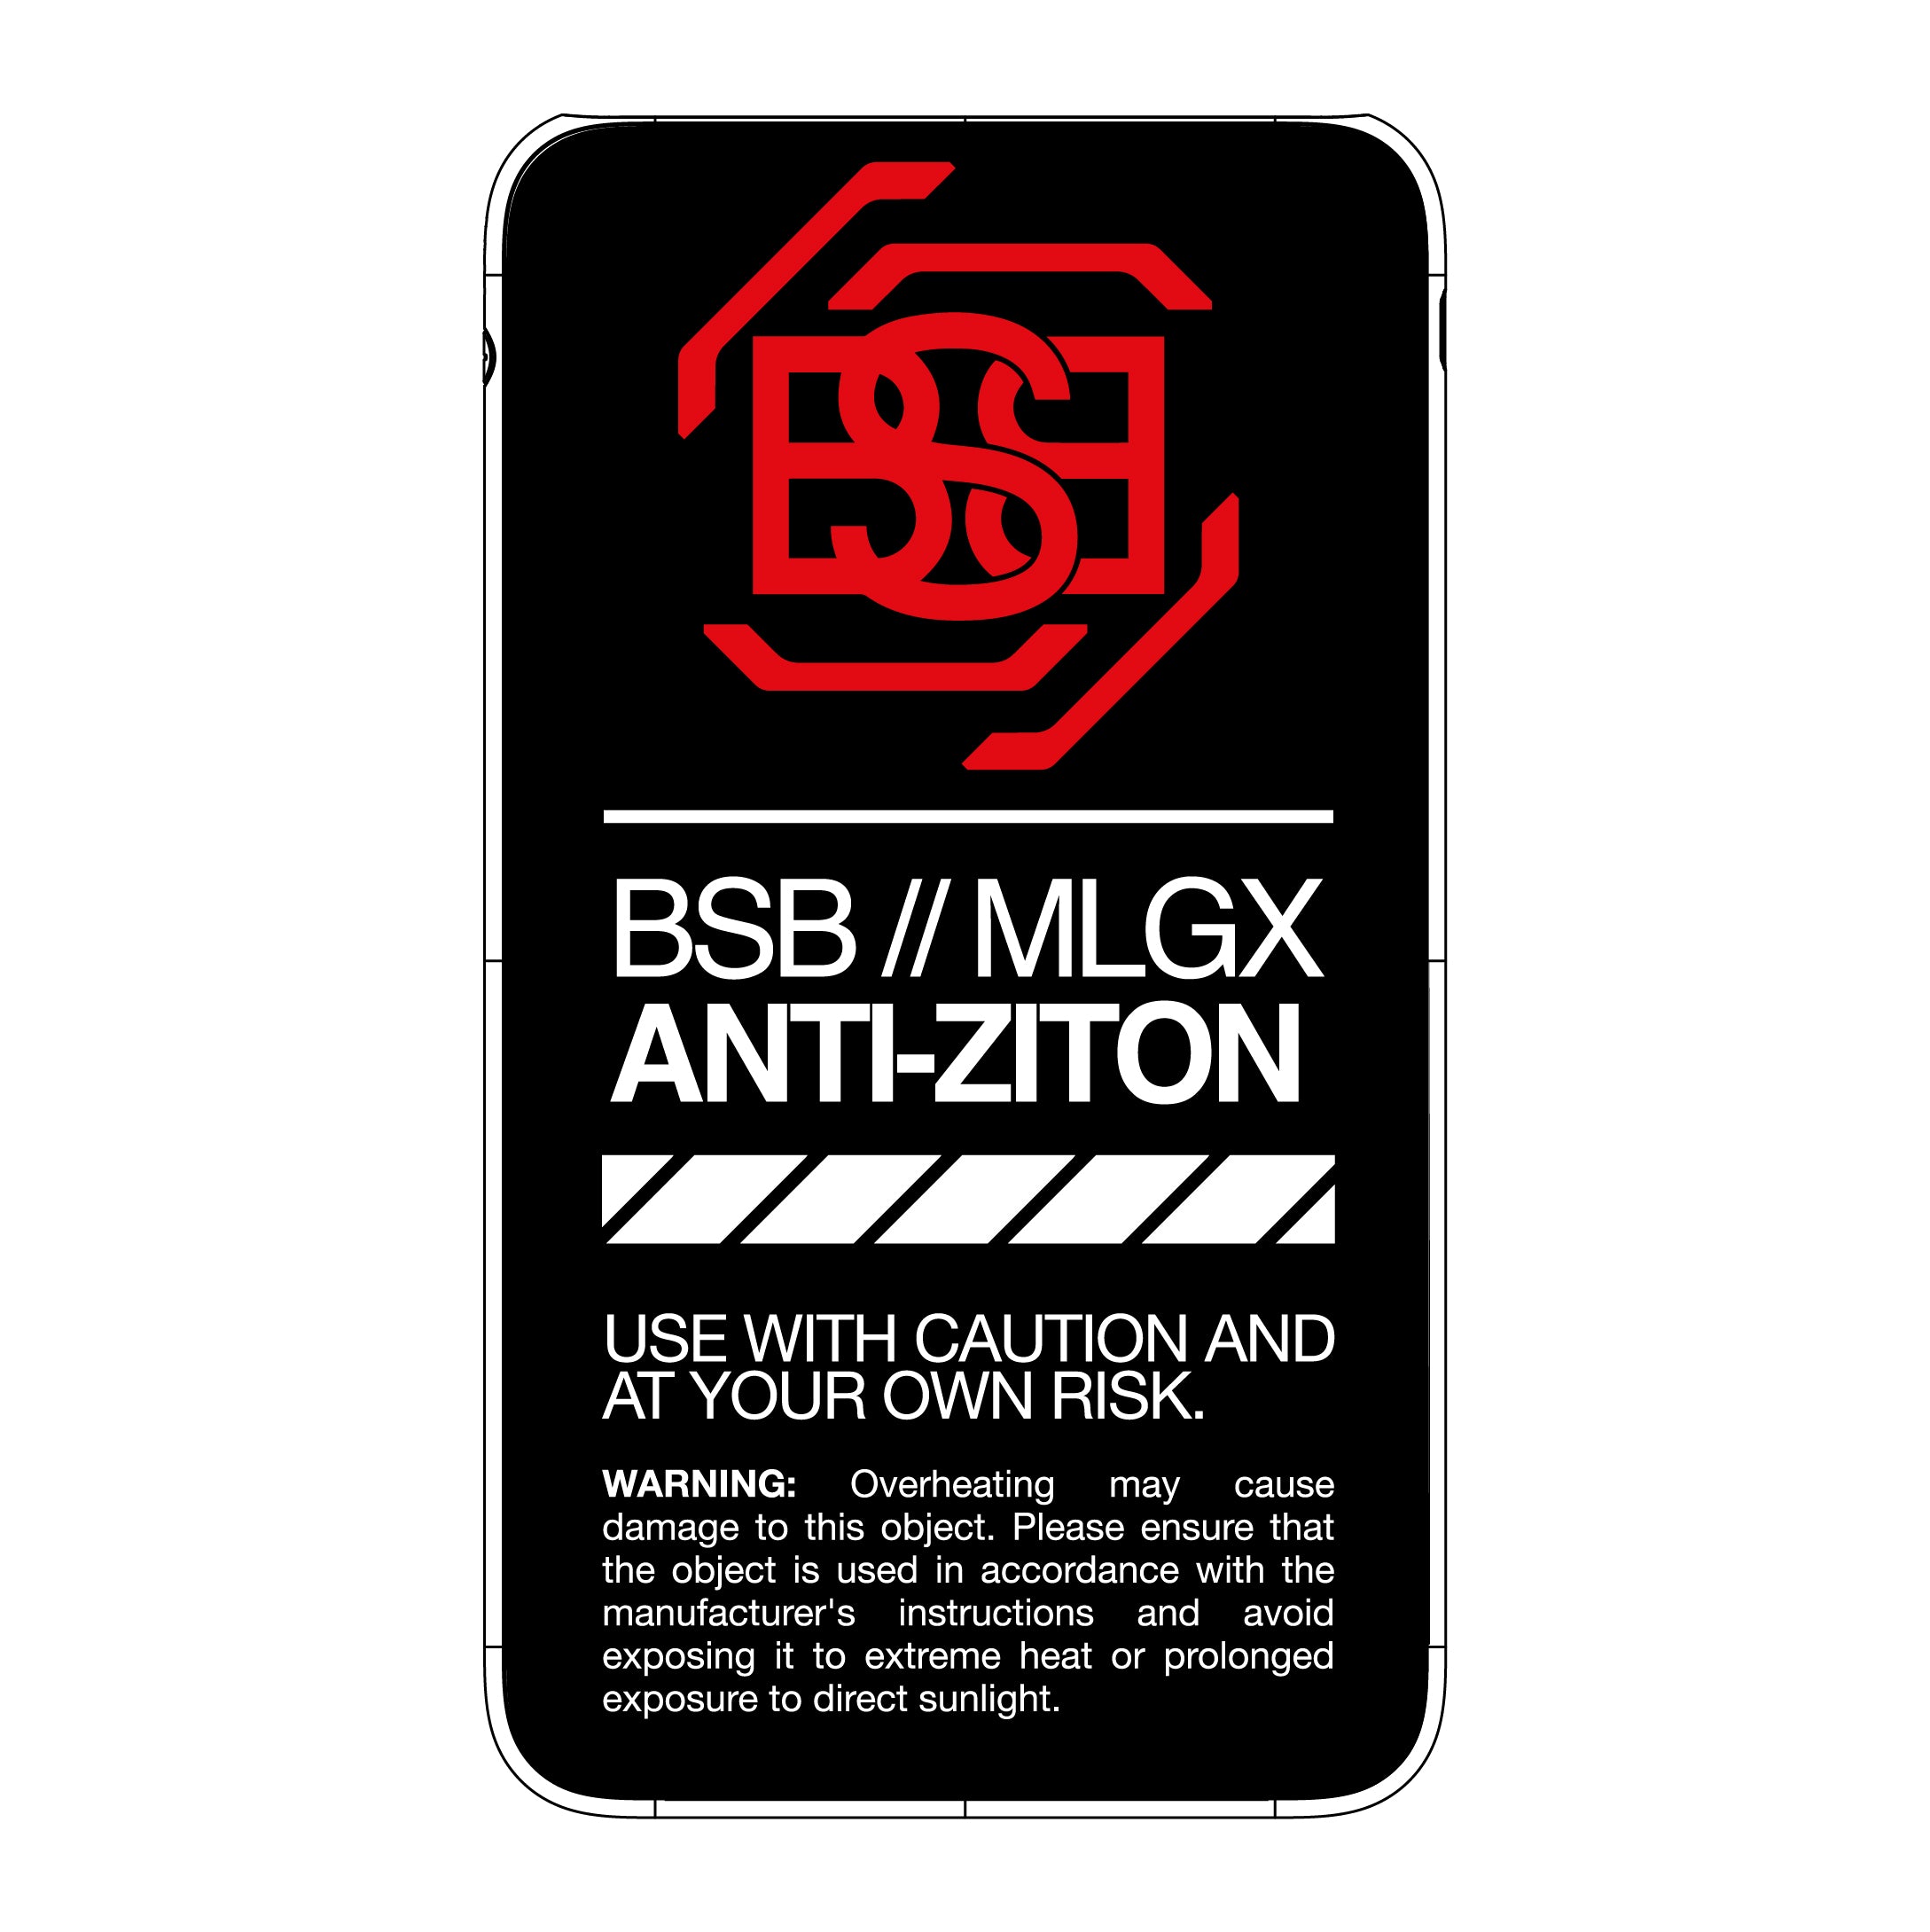 Batterie externe MANA x BSB//MLGX